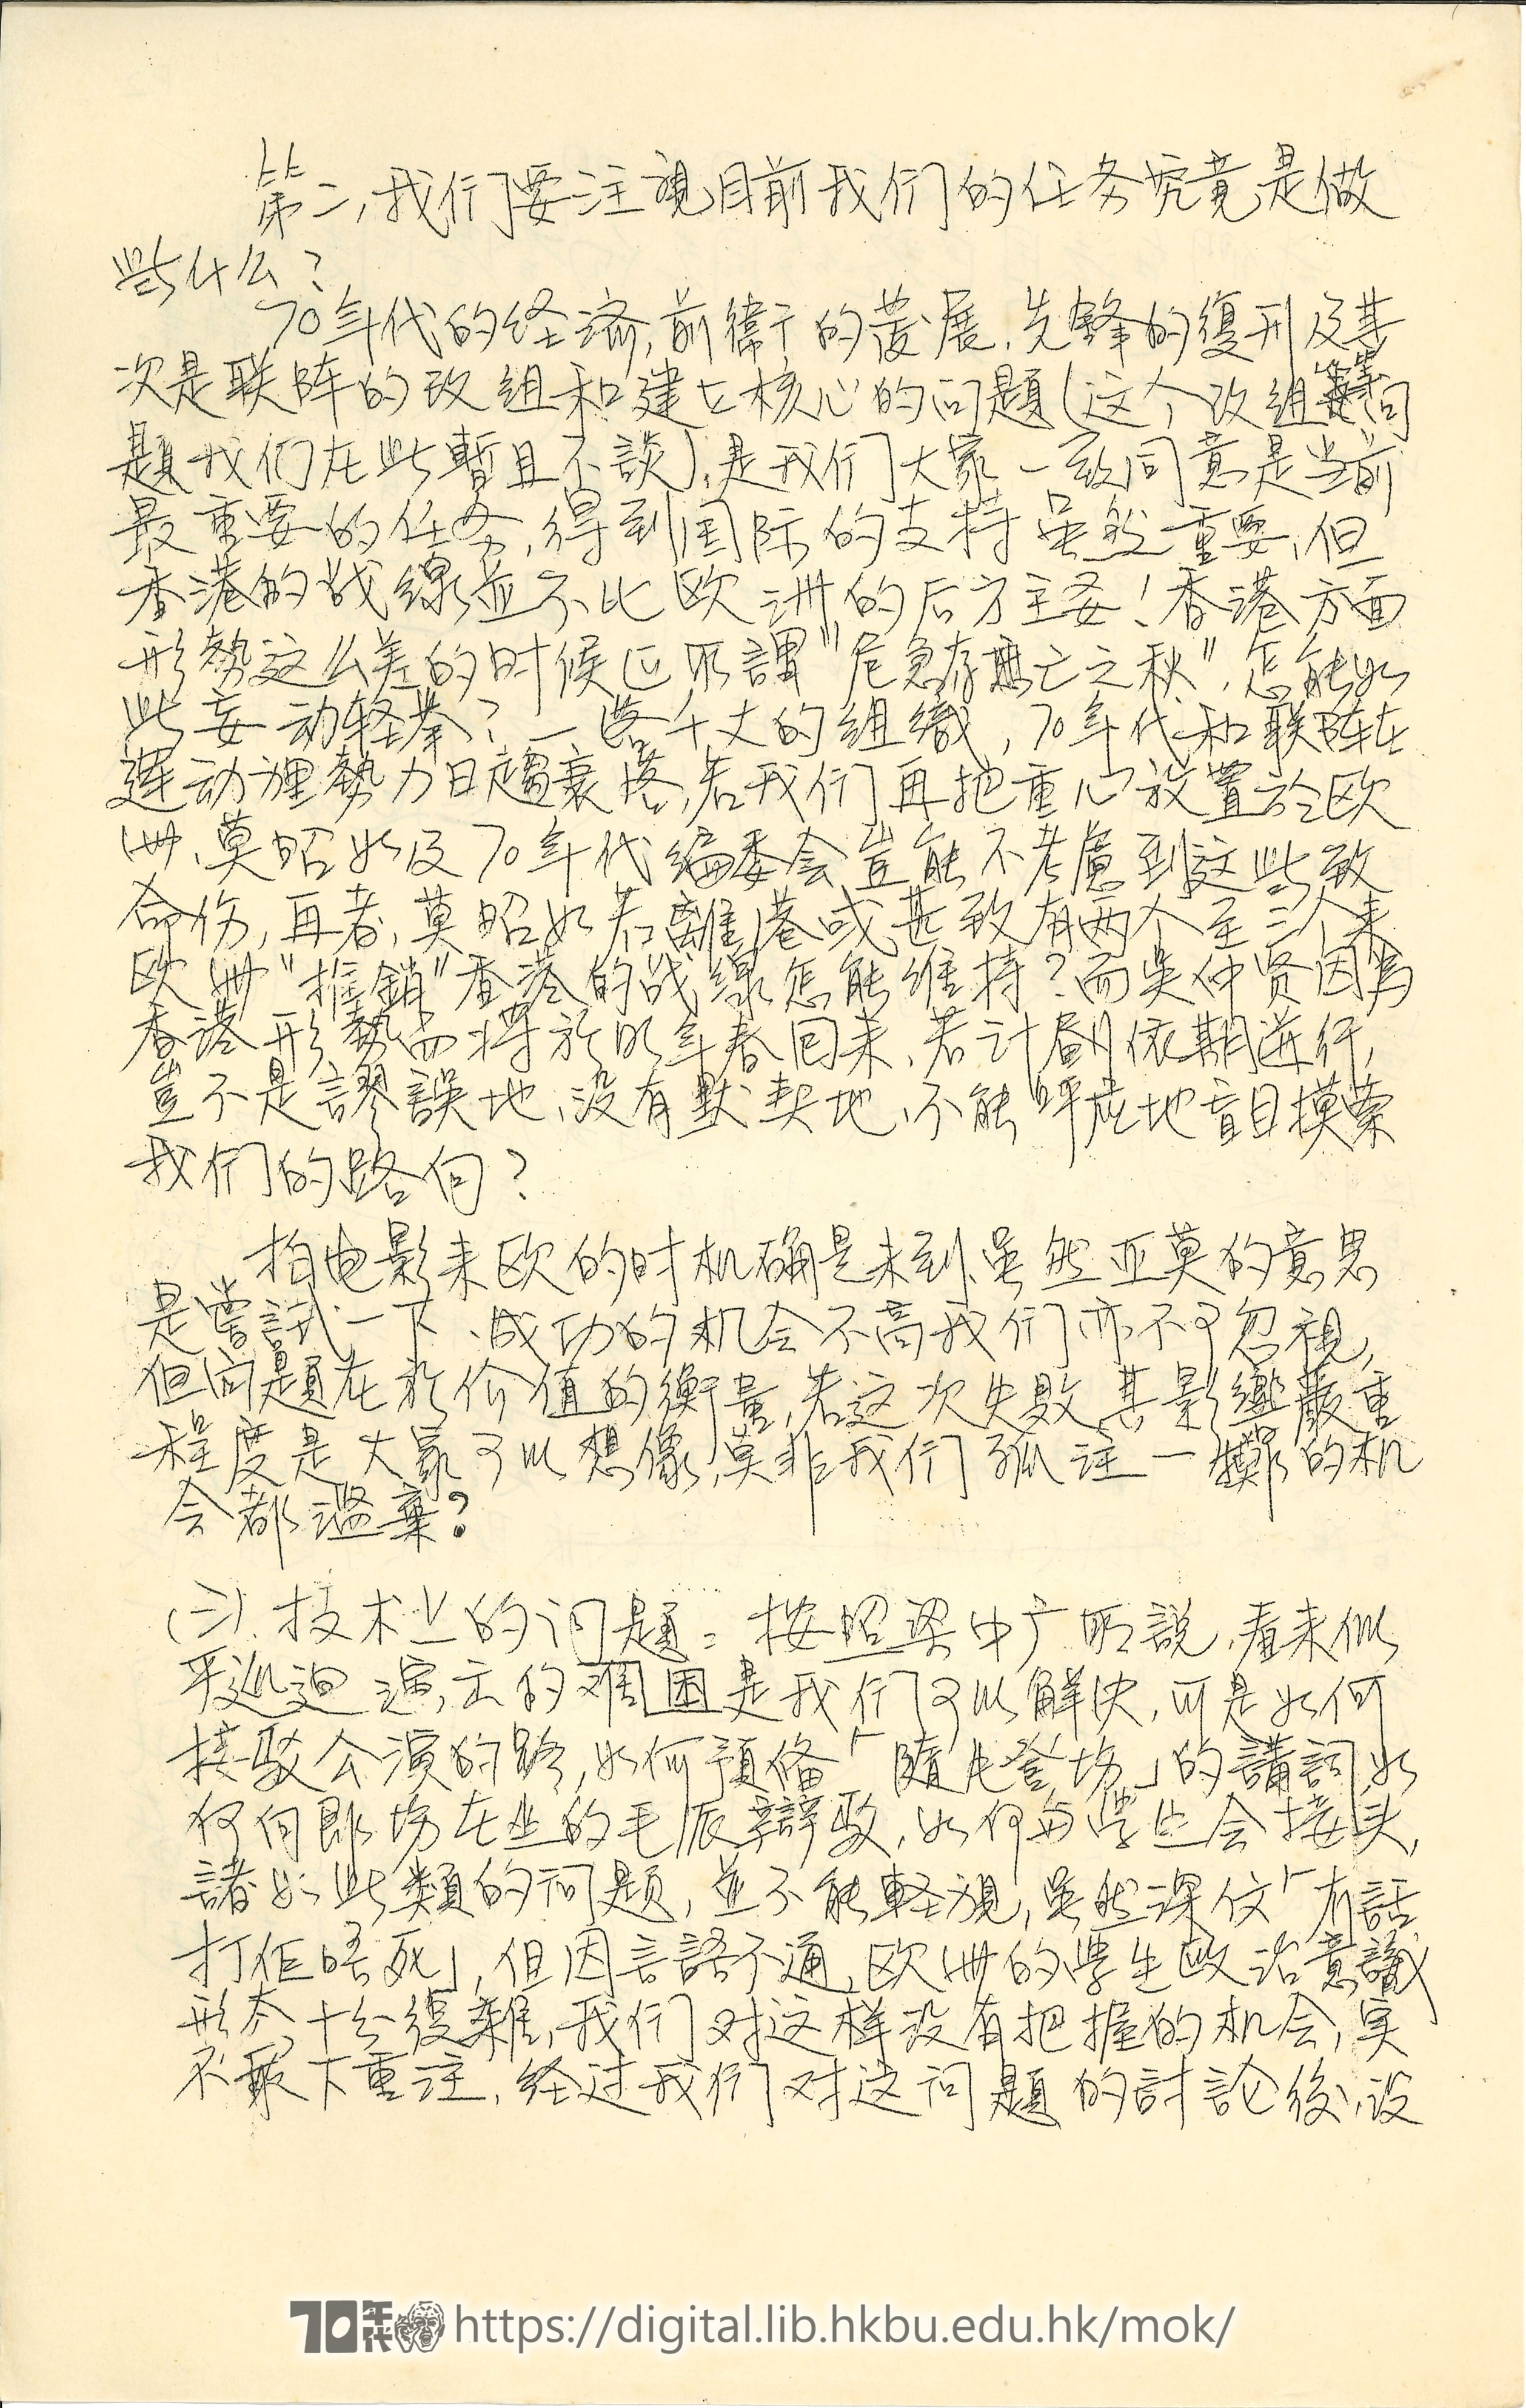   Letter from Ng Chung-yin, Ng Ka-lun et al to editors of 70